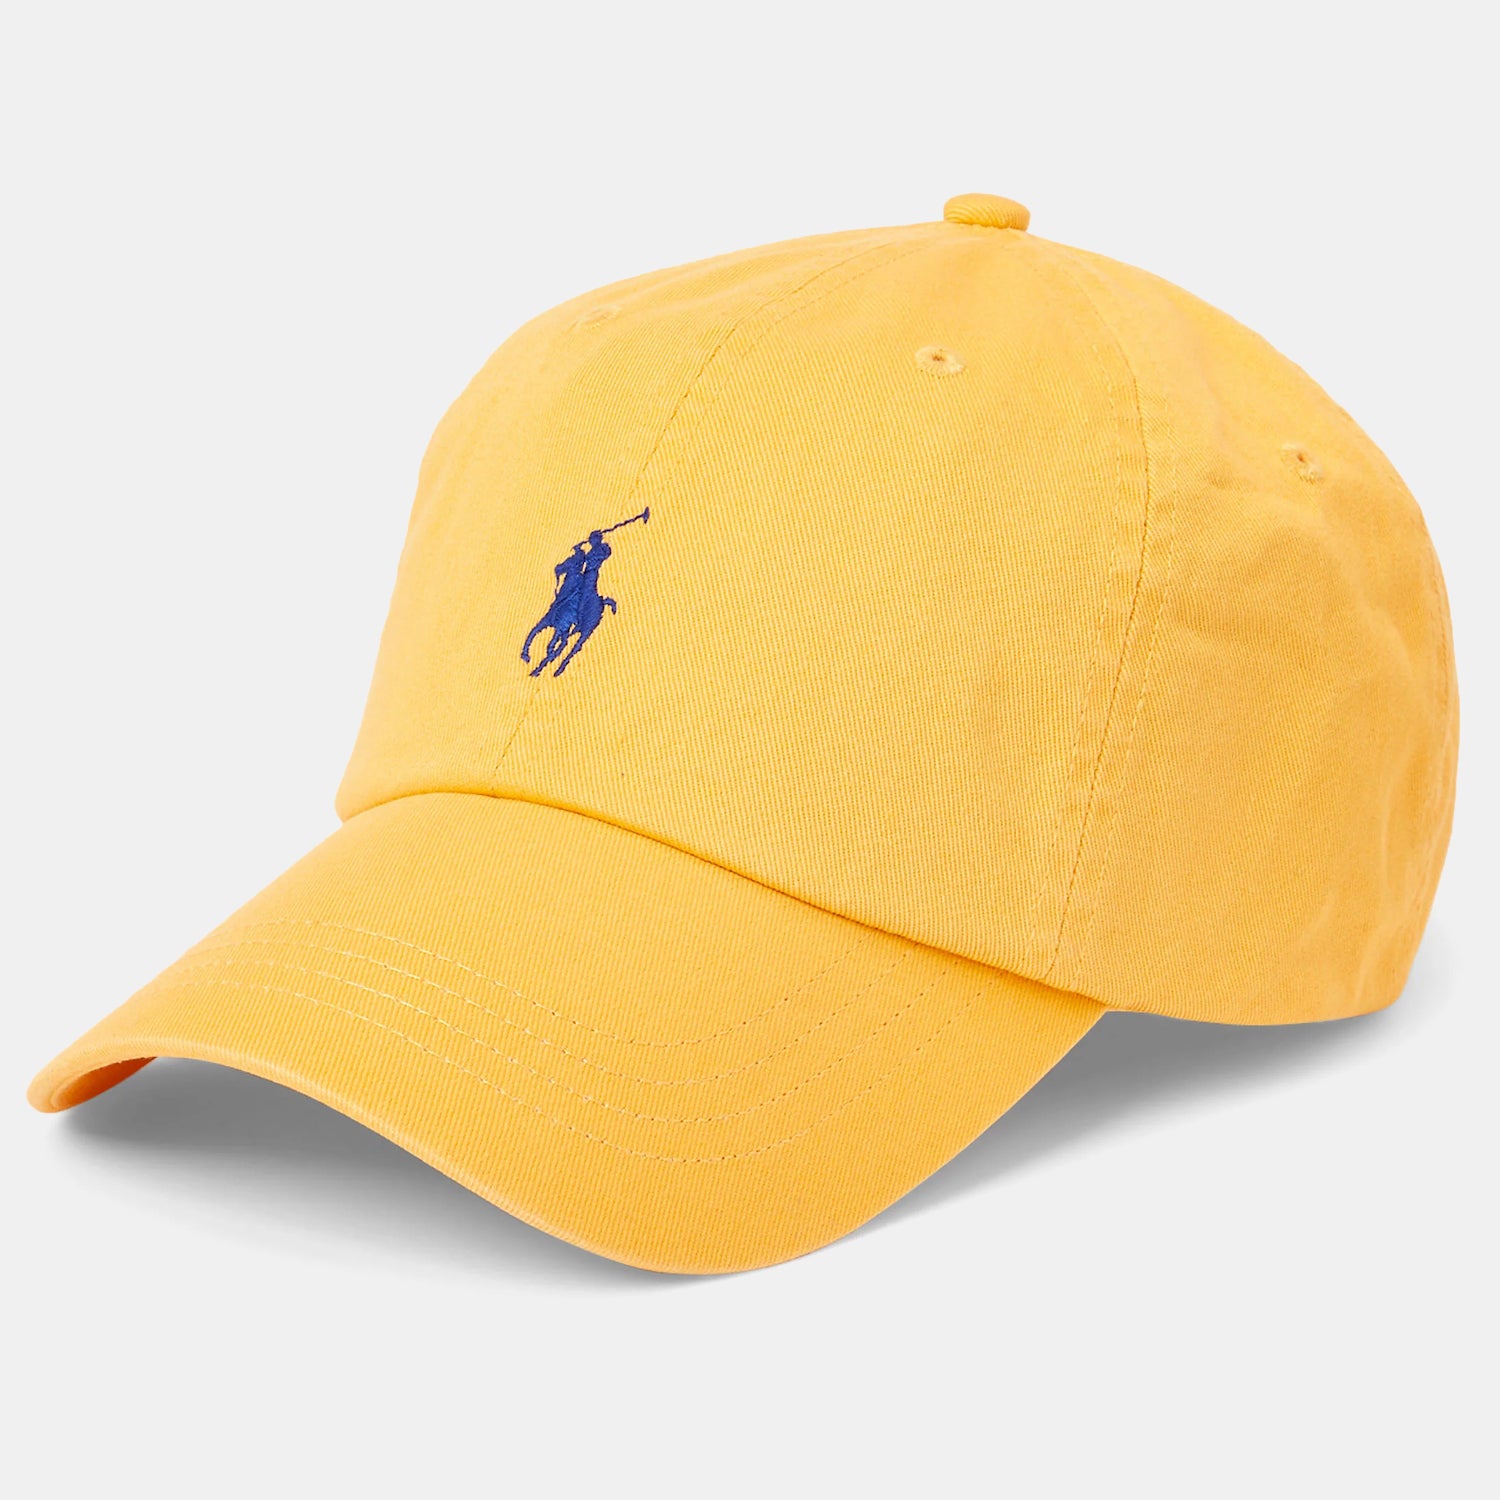 ralph-lauren-cap-hat-710548524-yellow-amarelo_shot3